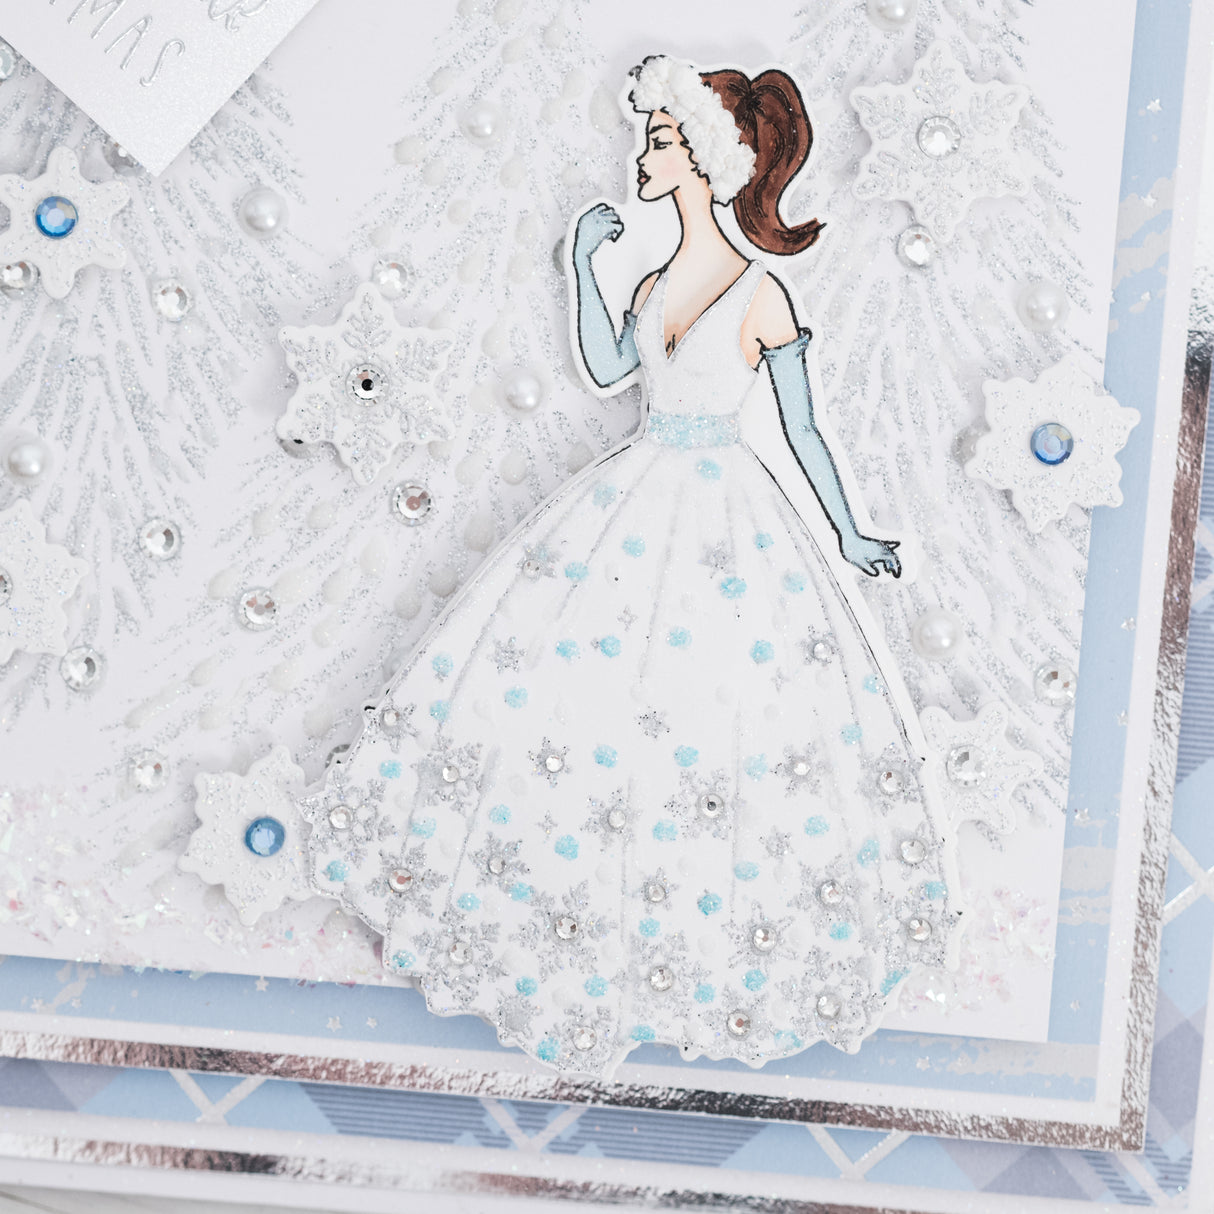 Chloes Creative Cards Die & Stamp Set - Snowflake Queen